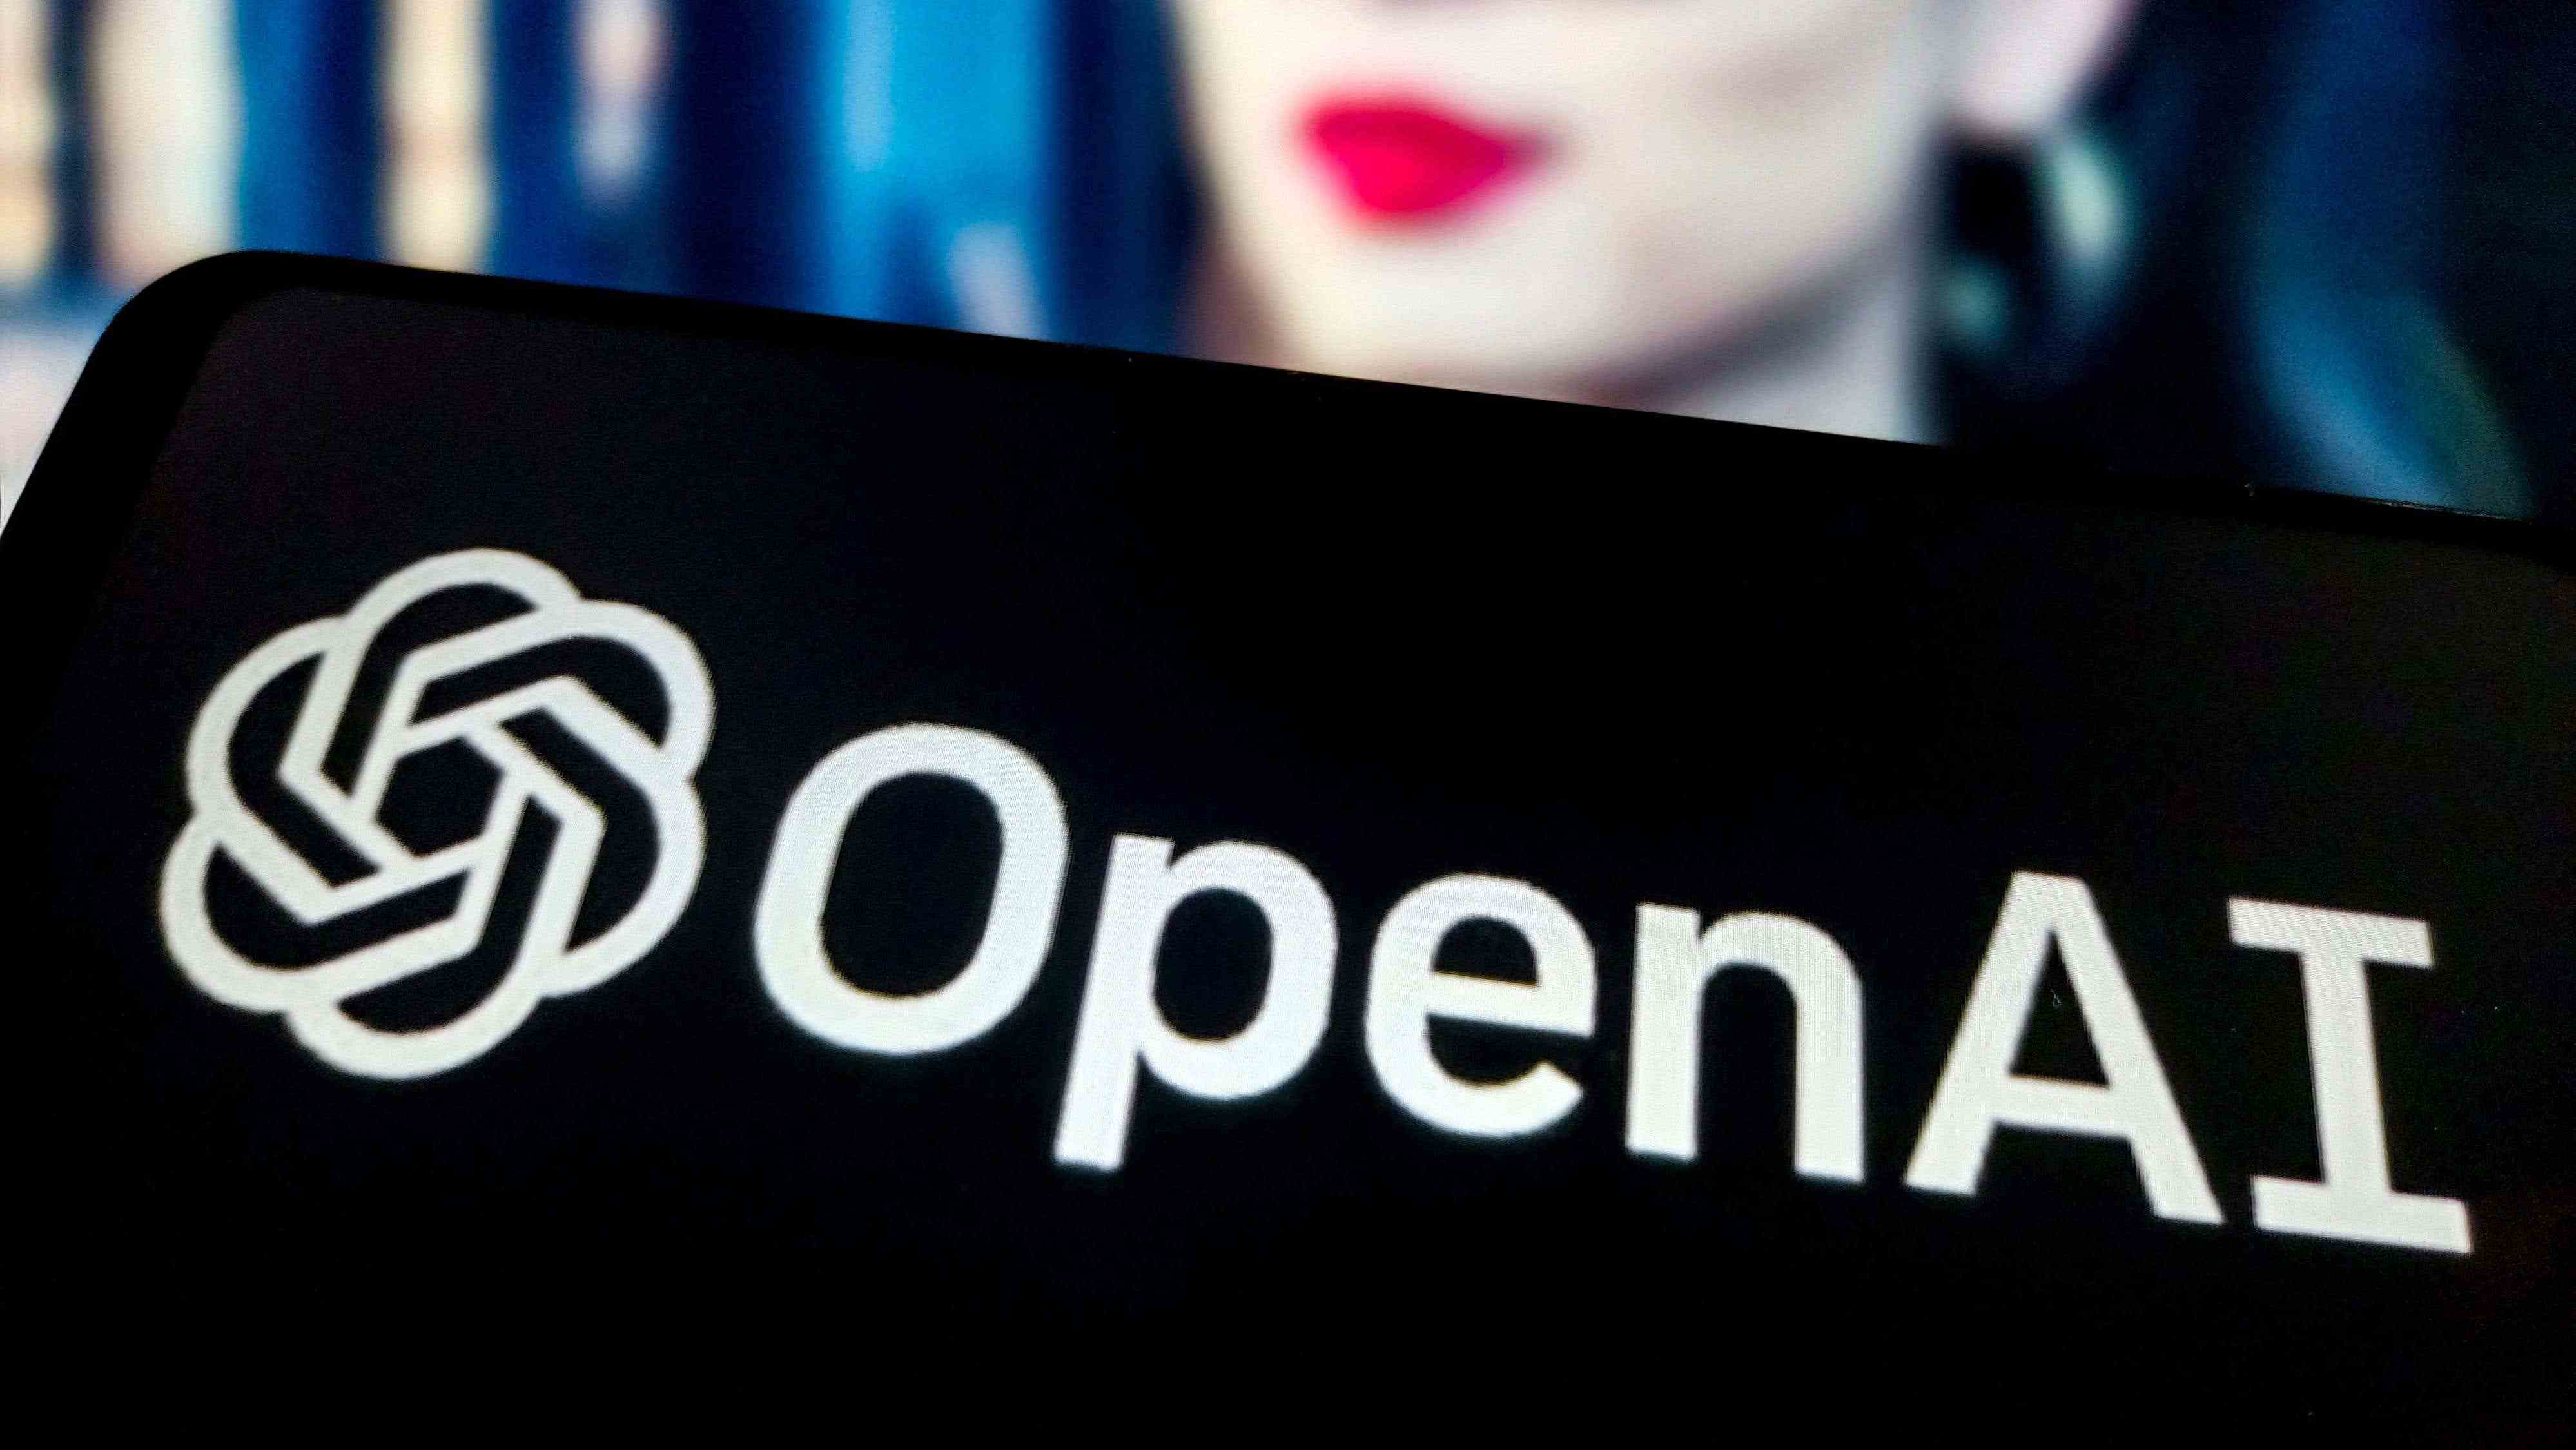 OpenAI, Yapay Zeka Pornosu Yapmadığını Söyledi başlıklı makalenin resmi